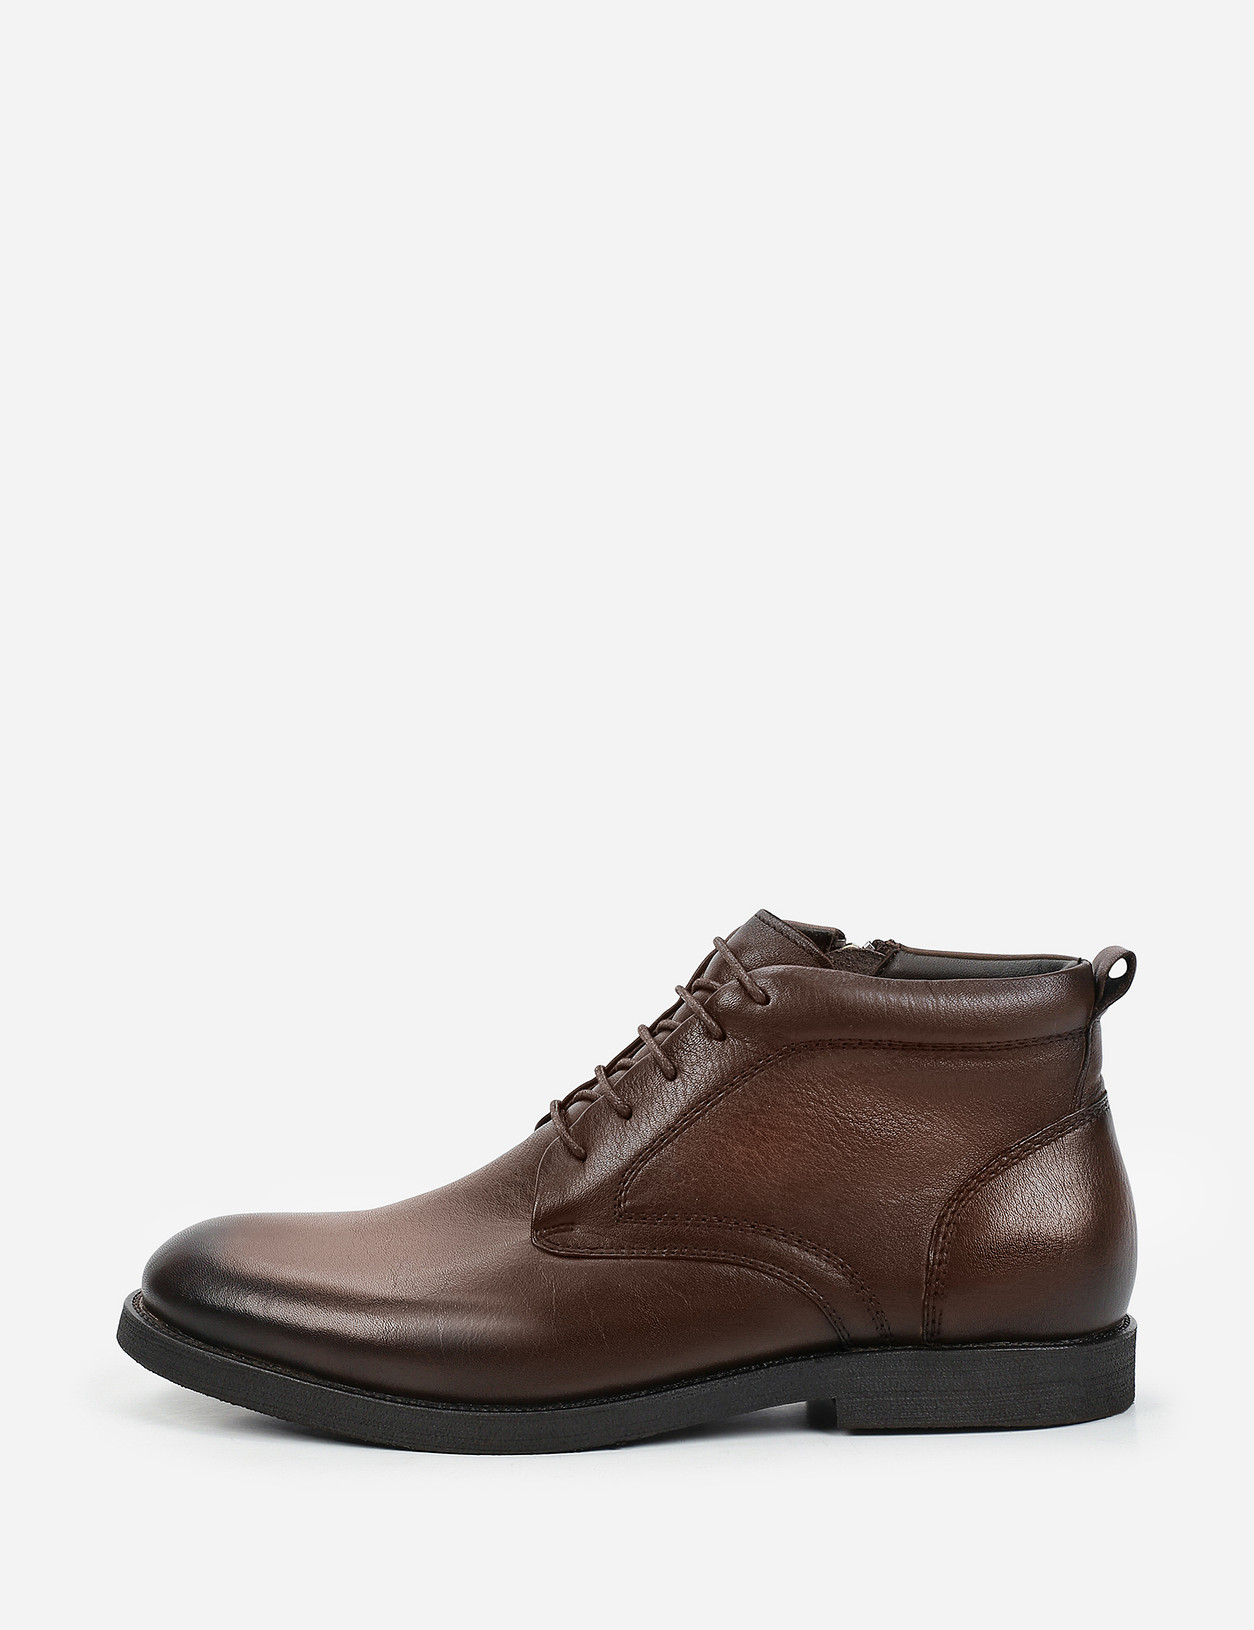 Обувь мужская отзывы покупателей. Thomas MUNZ ботинки мужские. Маскотте полуботинки мужские.